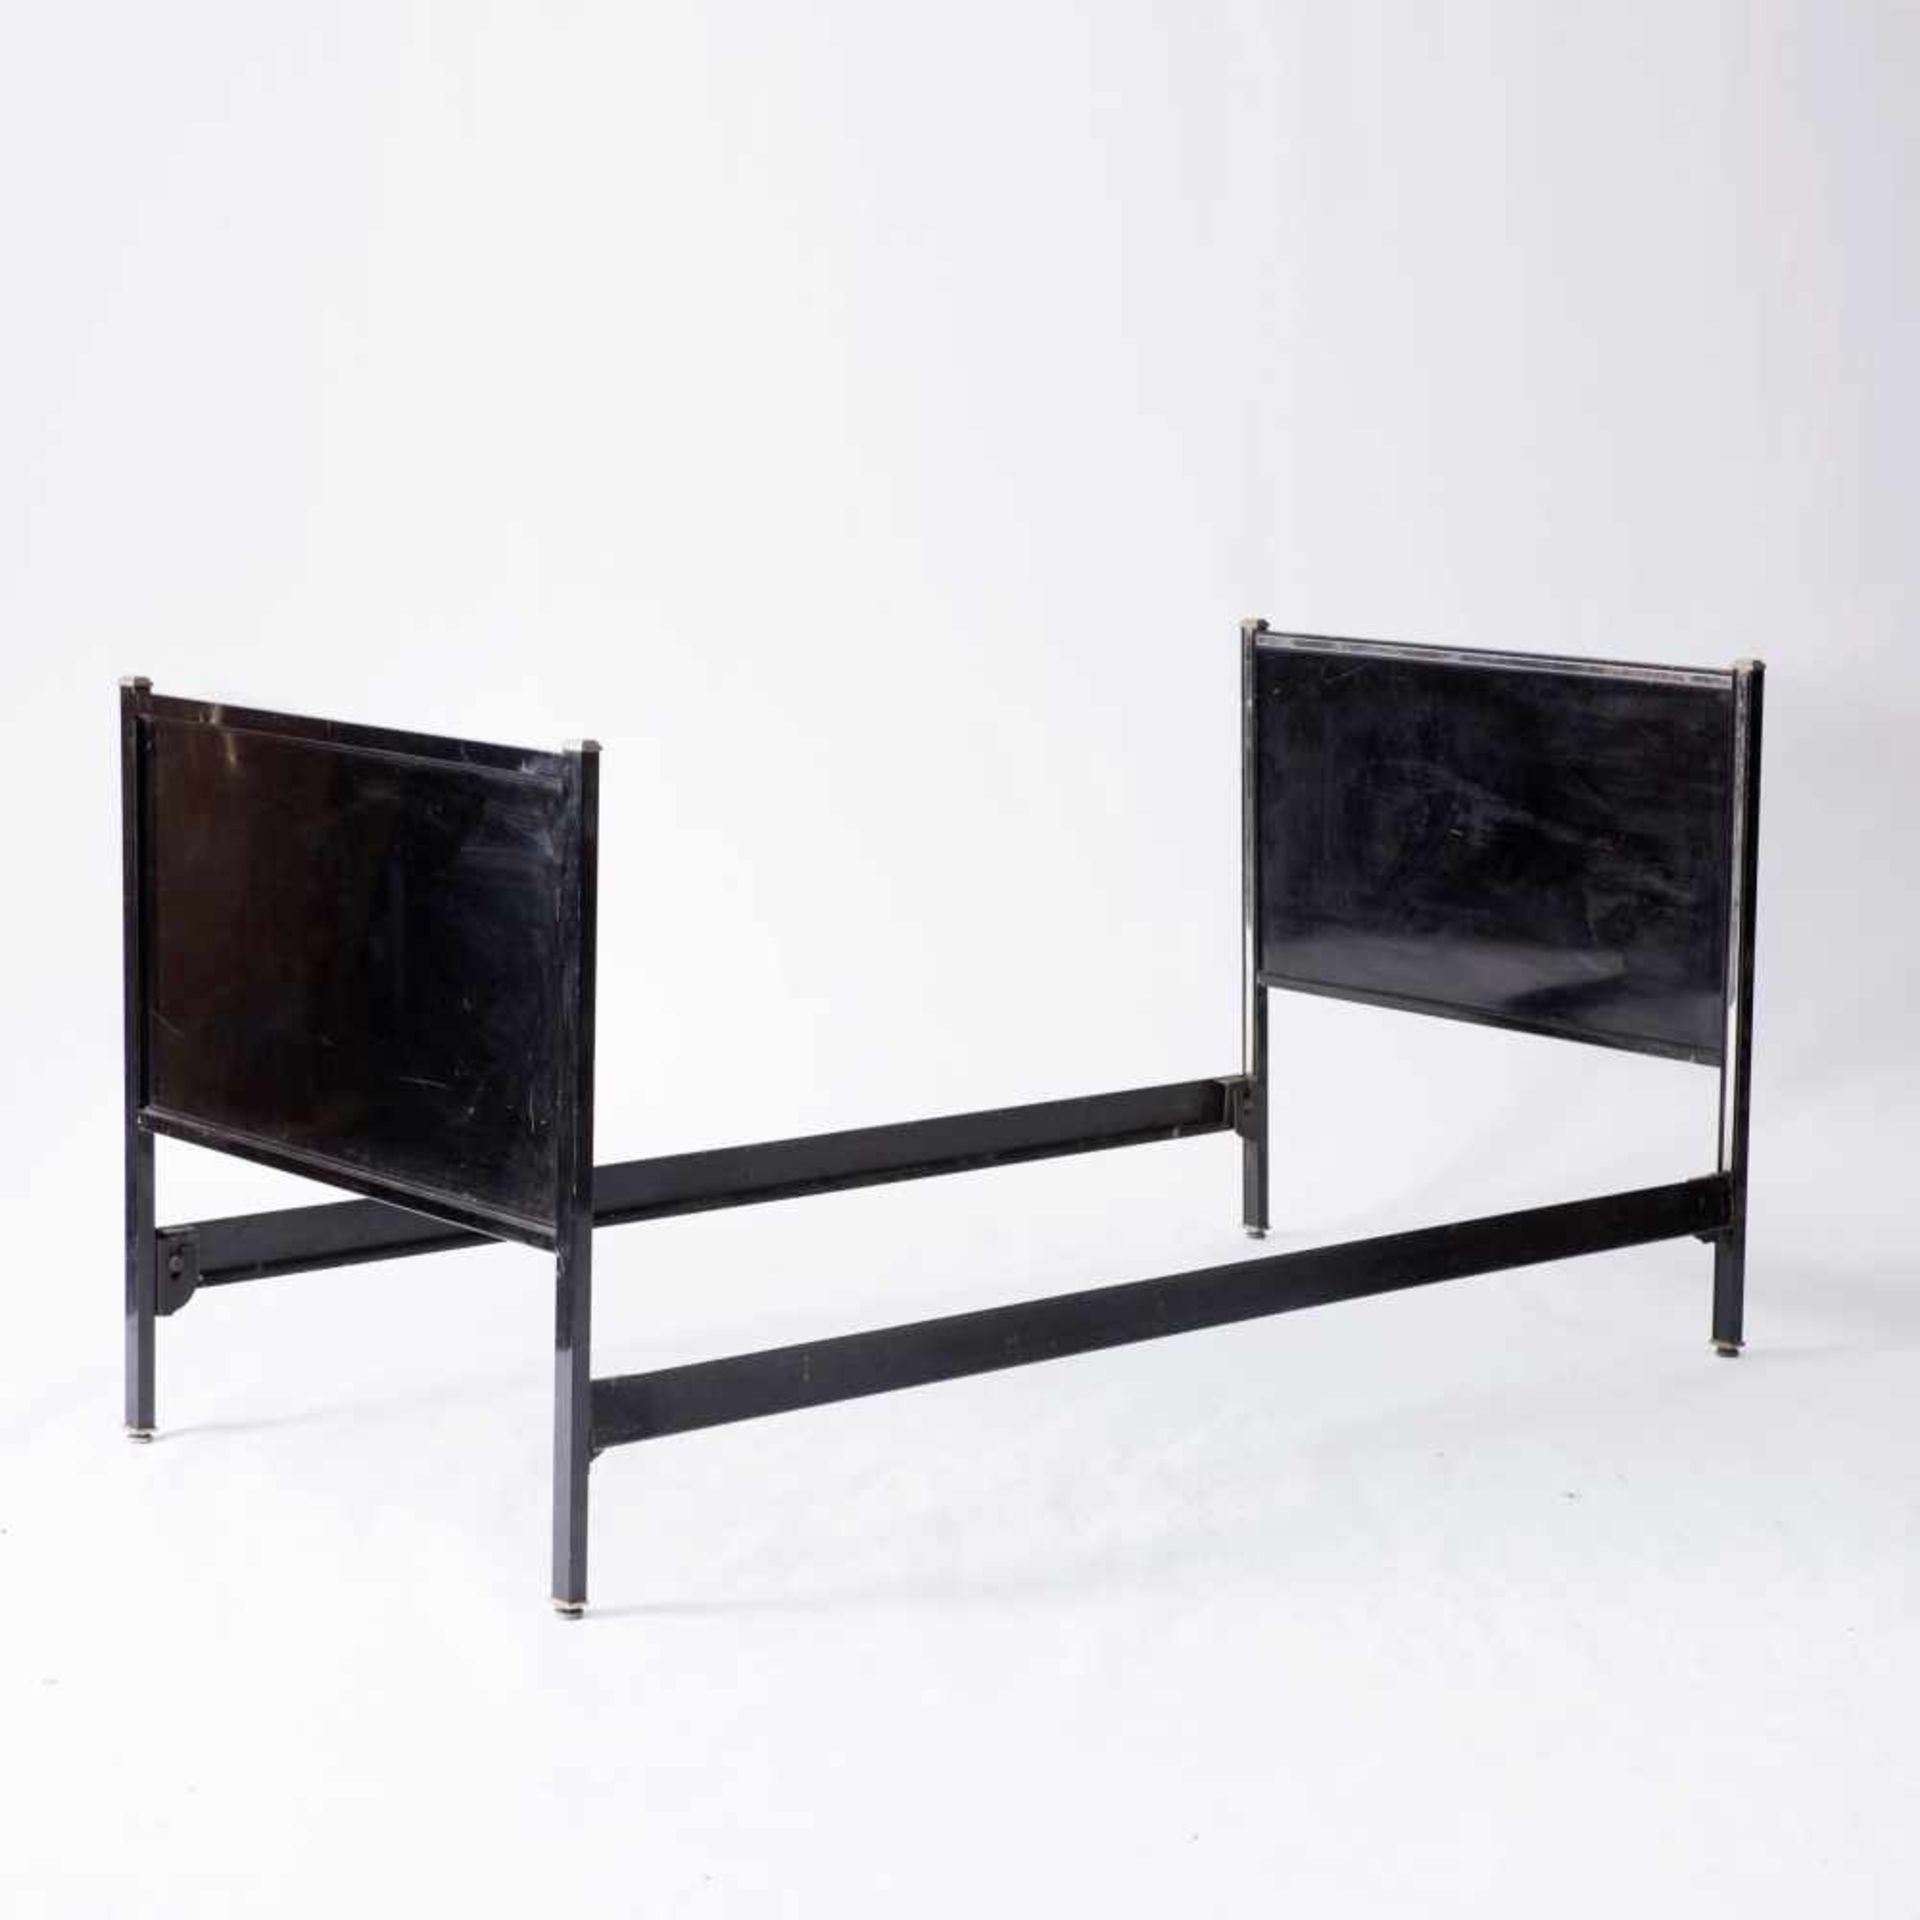 Bettrahmen, um 1932 Norman Bel Geddes H. 93,5 x 197 x 97,5 cm. Simmons Furniture Manufacturers, USA. - Bild 2 aus 4